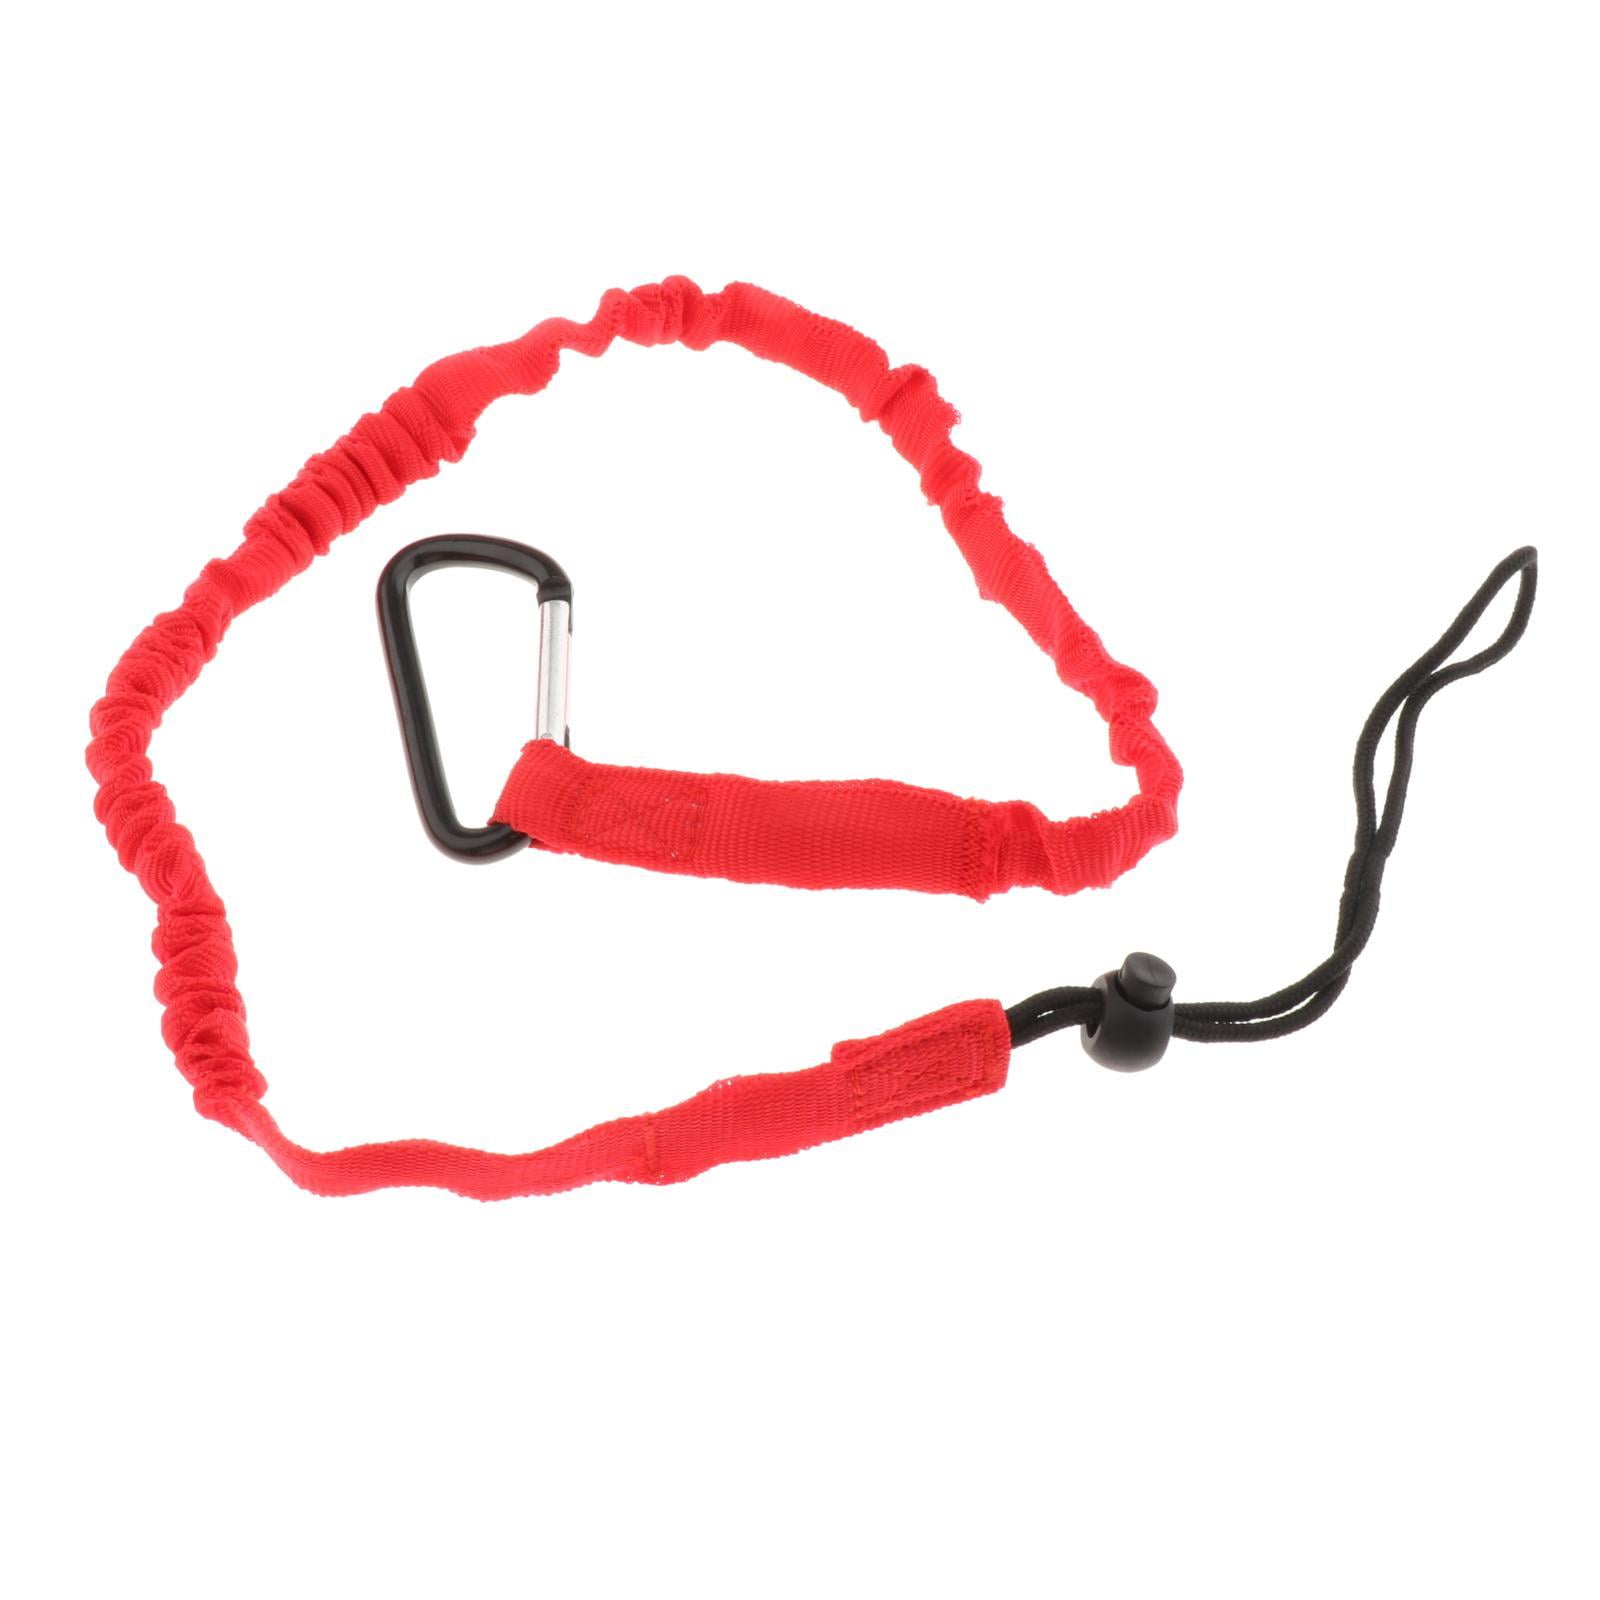 1x RED Kayak Paddle Leash Fishing Rod Holder Bungee Tie Rope Shock Cord Lanyard 